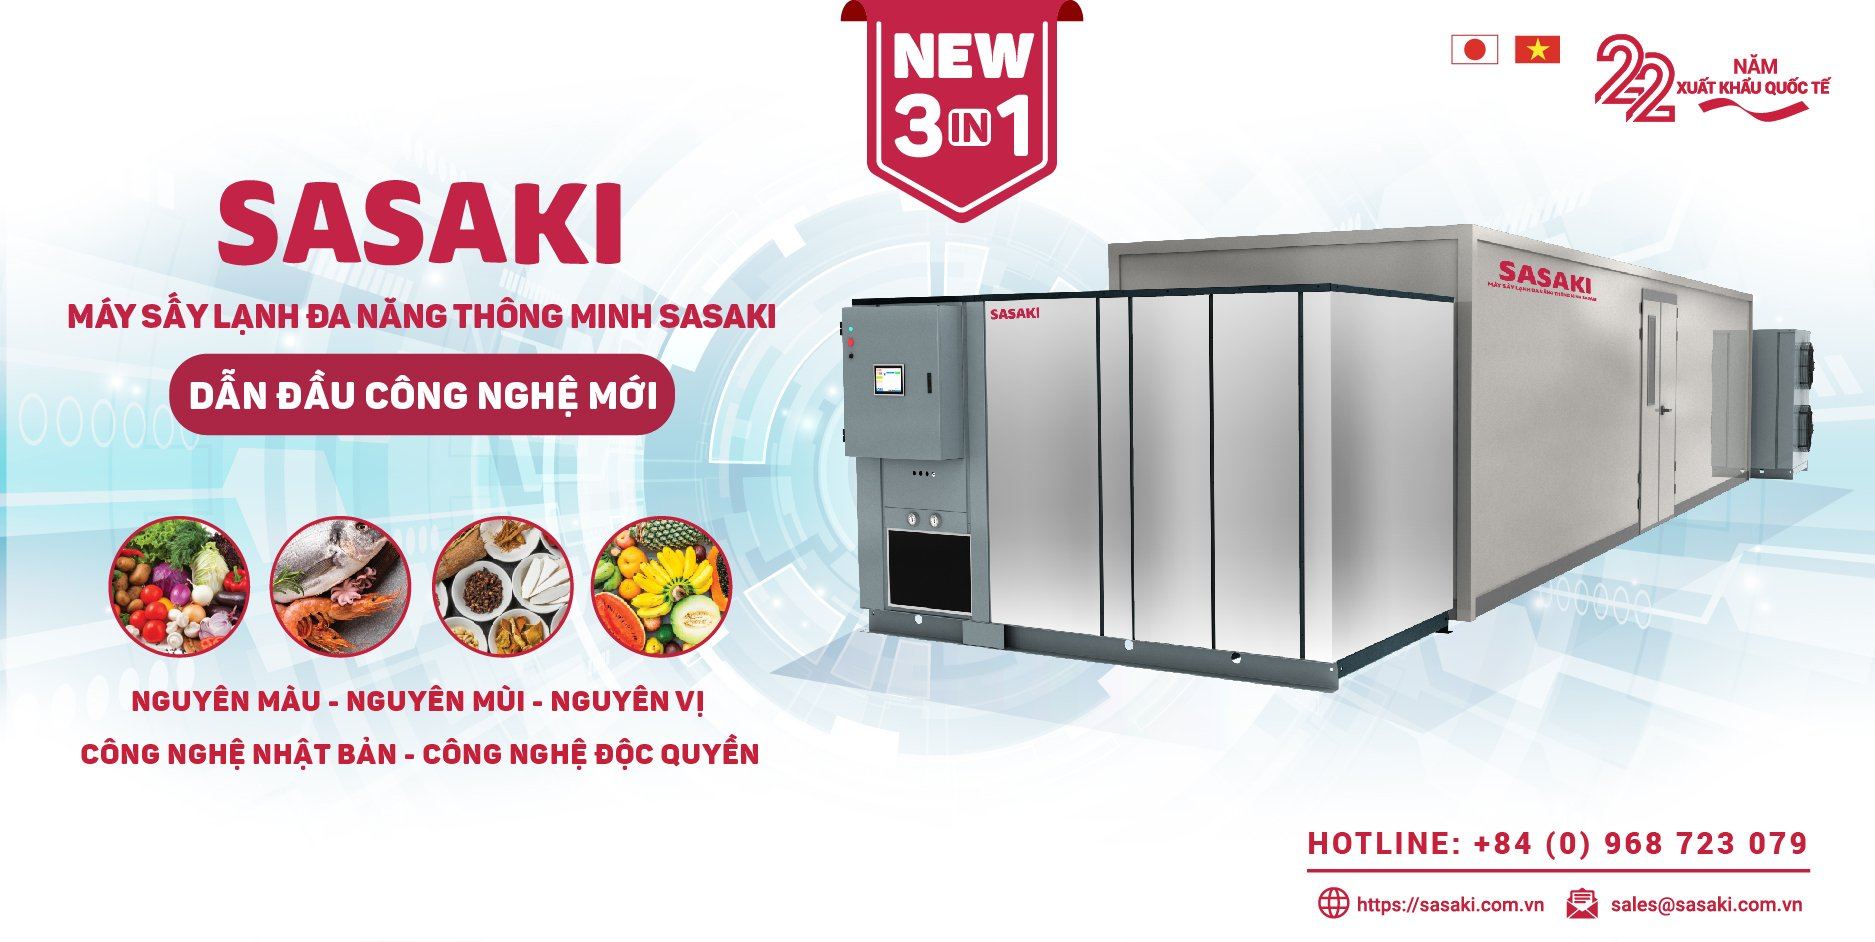 Máy sấy lạnh thế hệ mới đến từ SASAKI được cải tiến dựa trên nền tảng sấy bơm nhiệt truyền thống với nhiều ưu điểm vượt trội